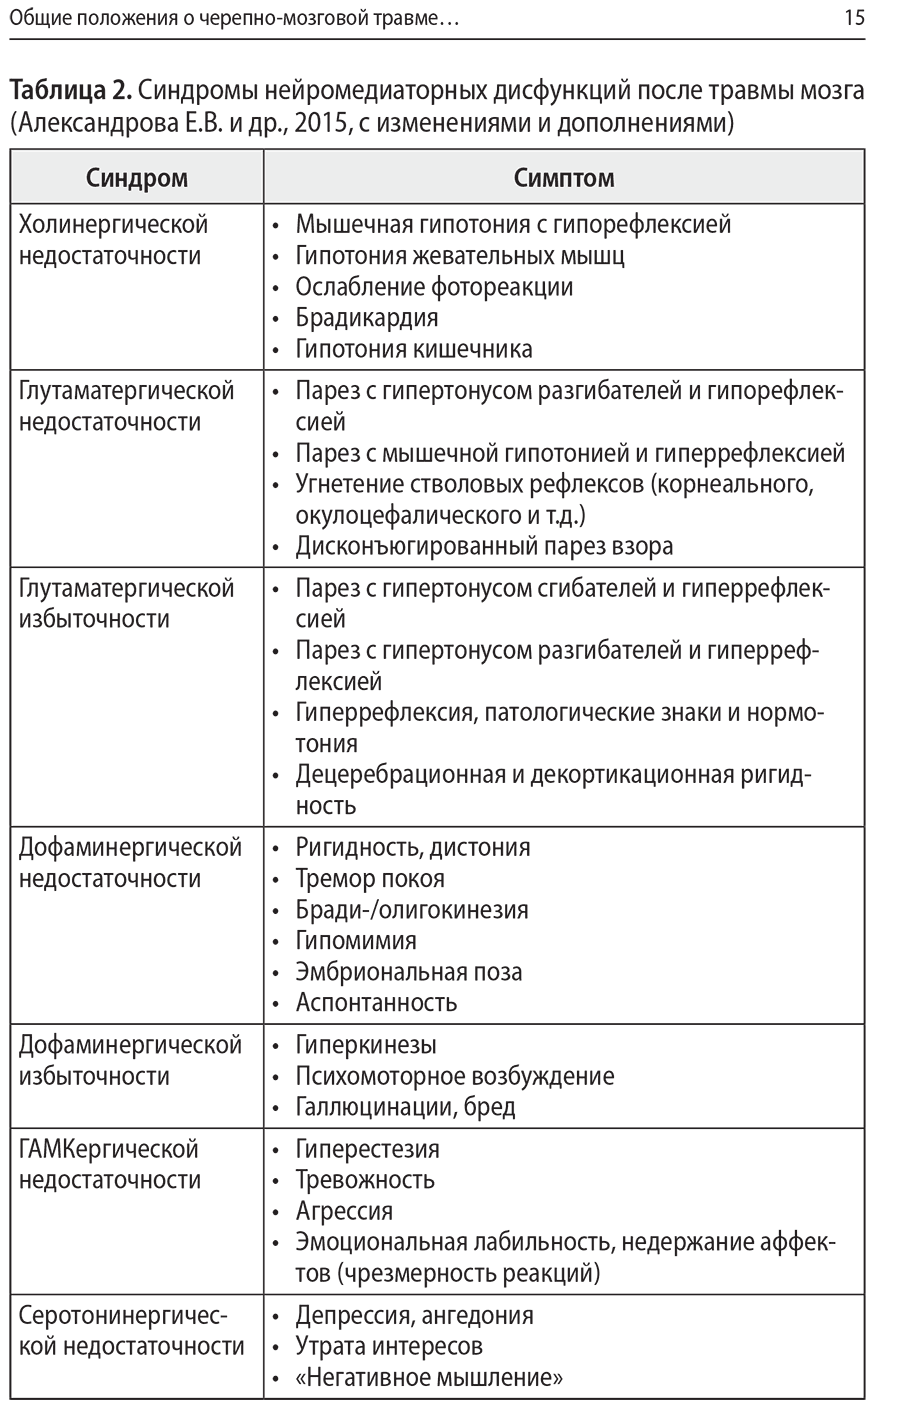 Таблица 2. Синдромы нейромедиаторных дисфункций после травмы мозга